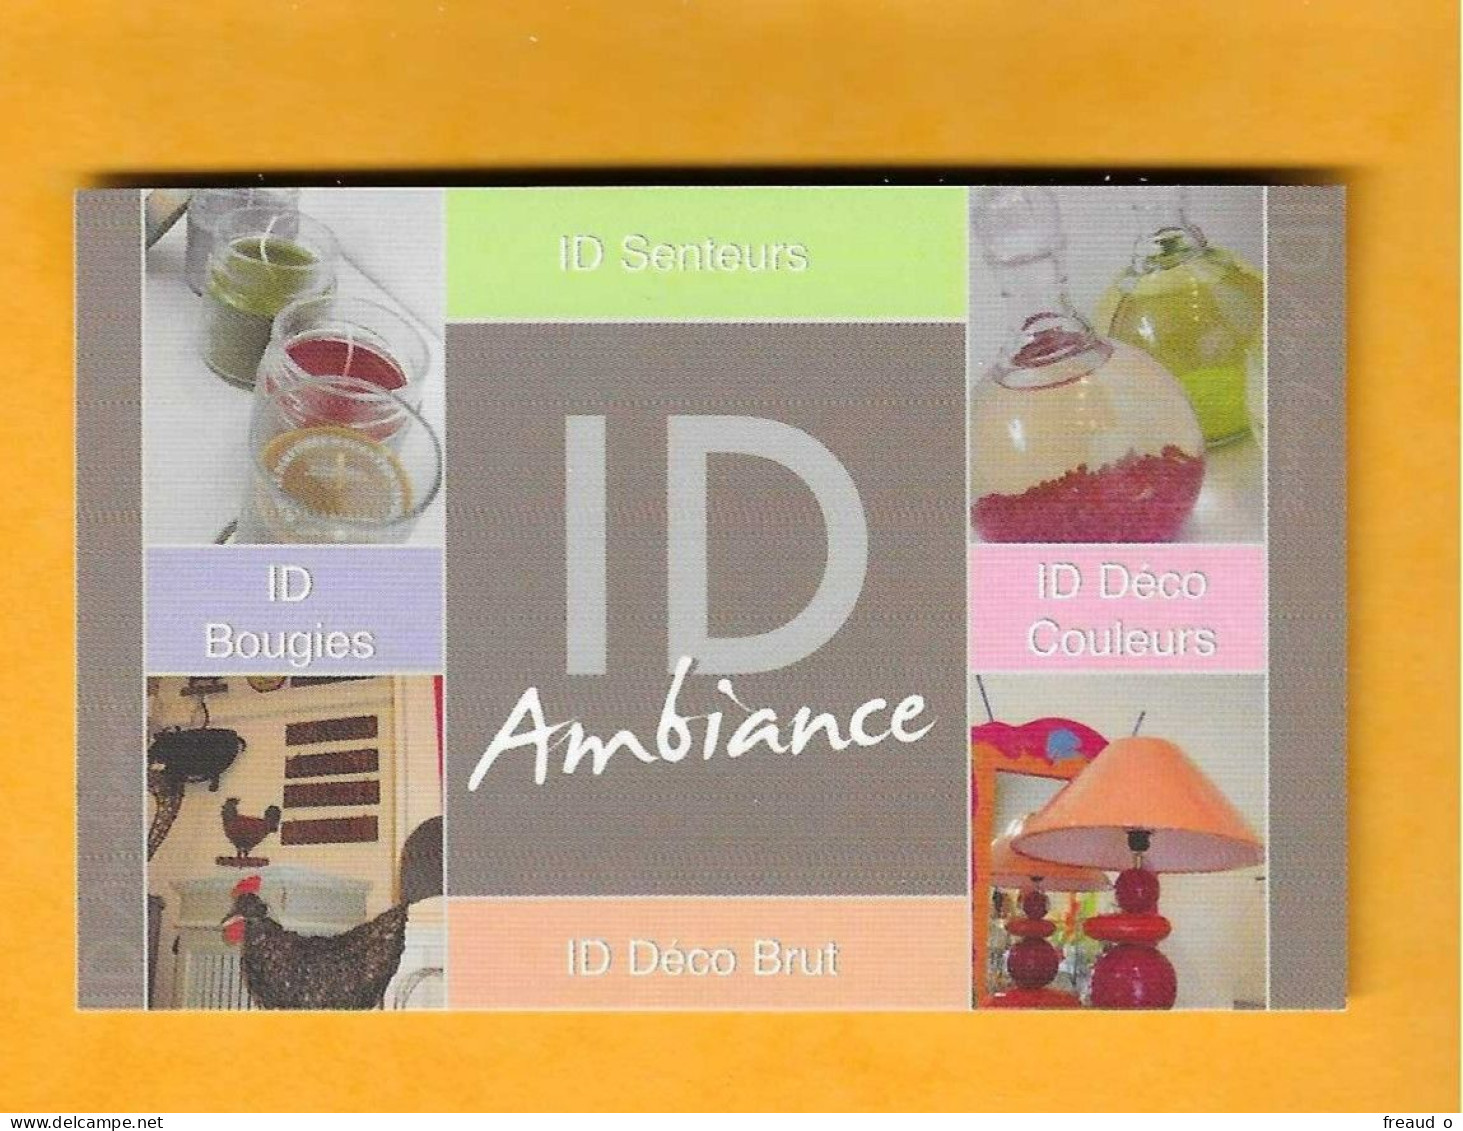 Carte De Visite ID Ambiance - 92120 Montrouge - - Autres & Non Classés